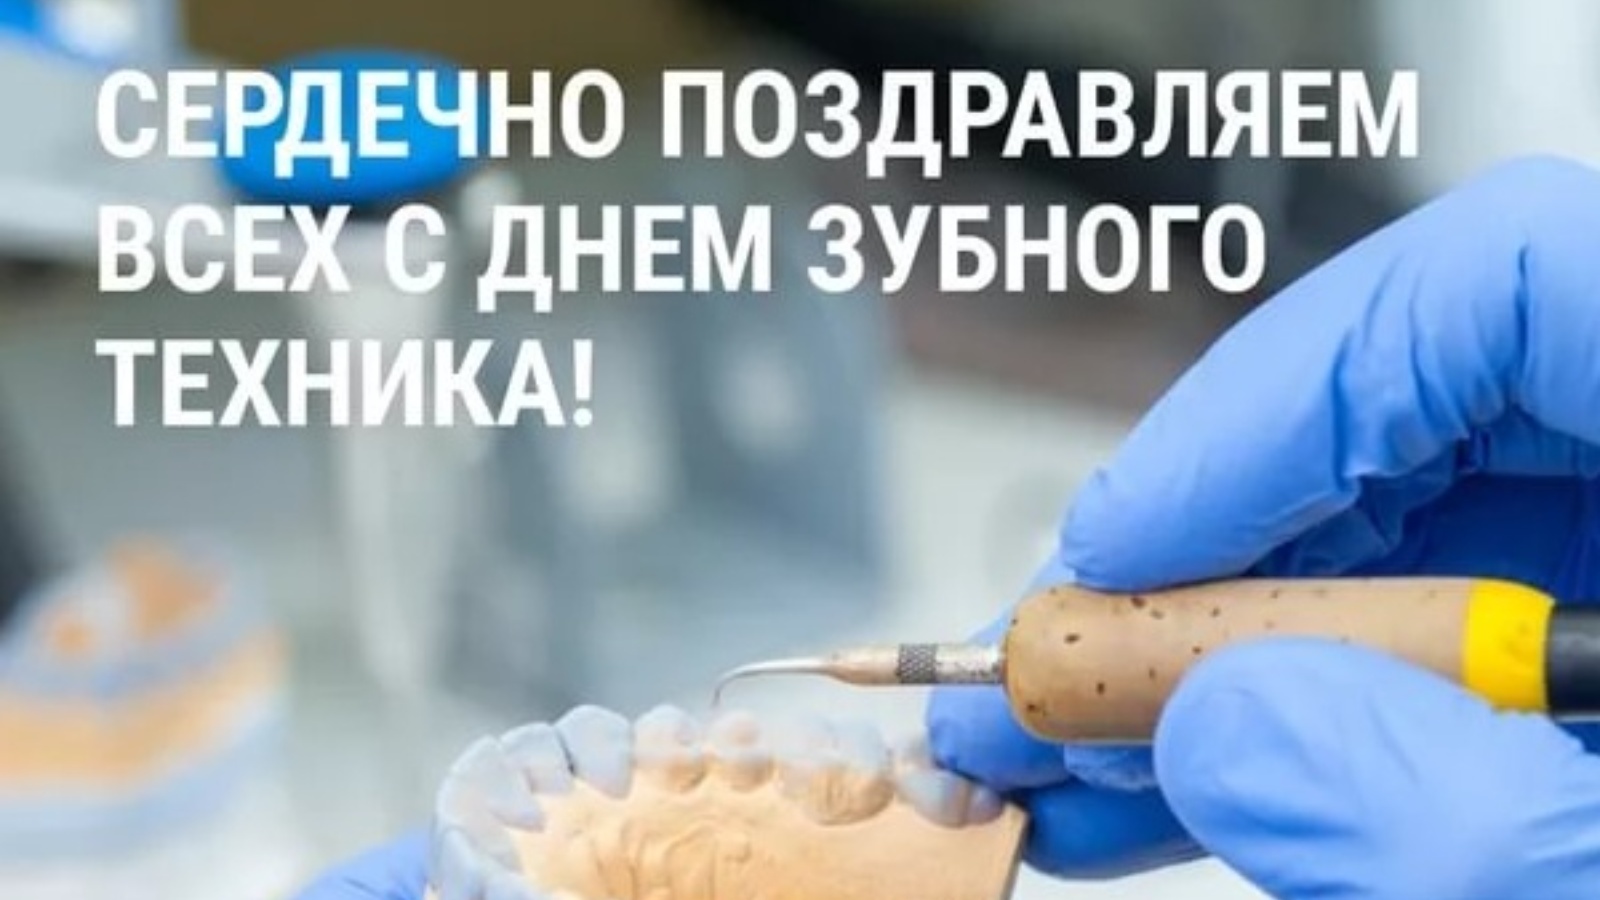 Международный день зубного техника